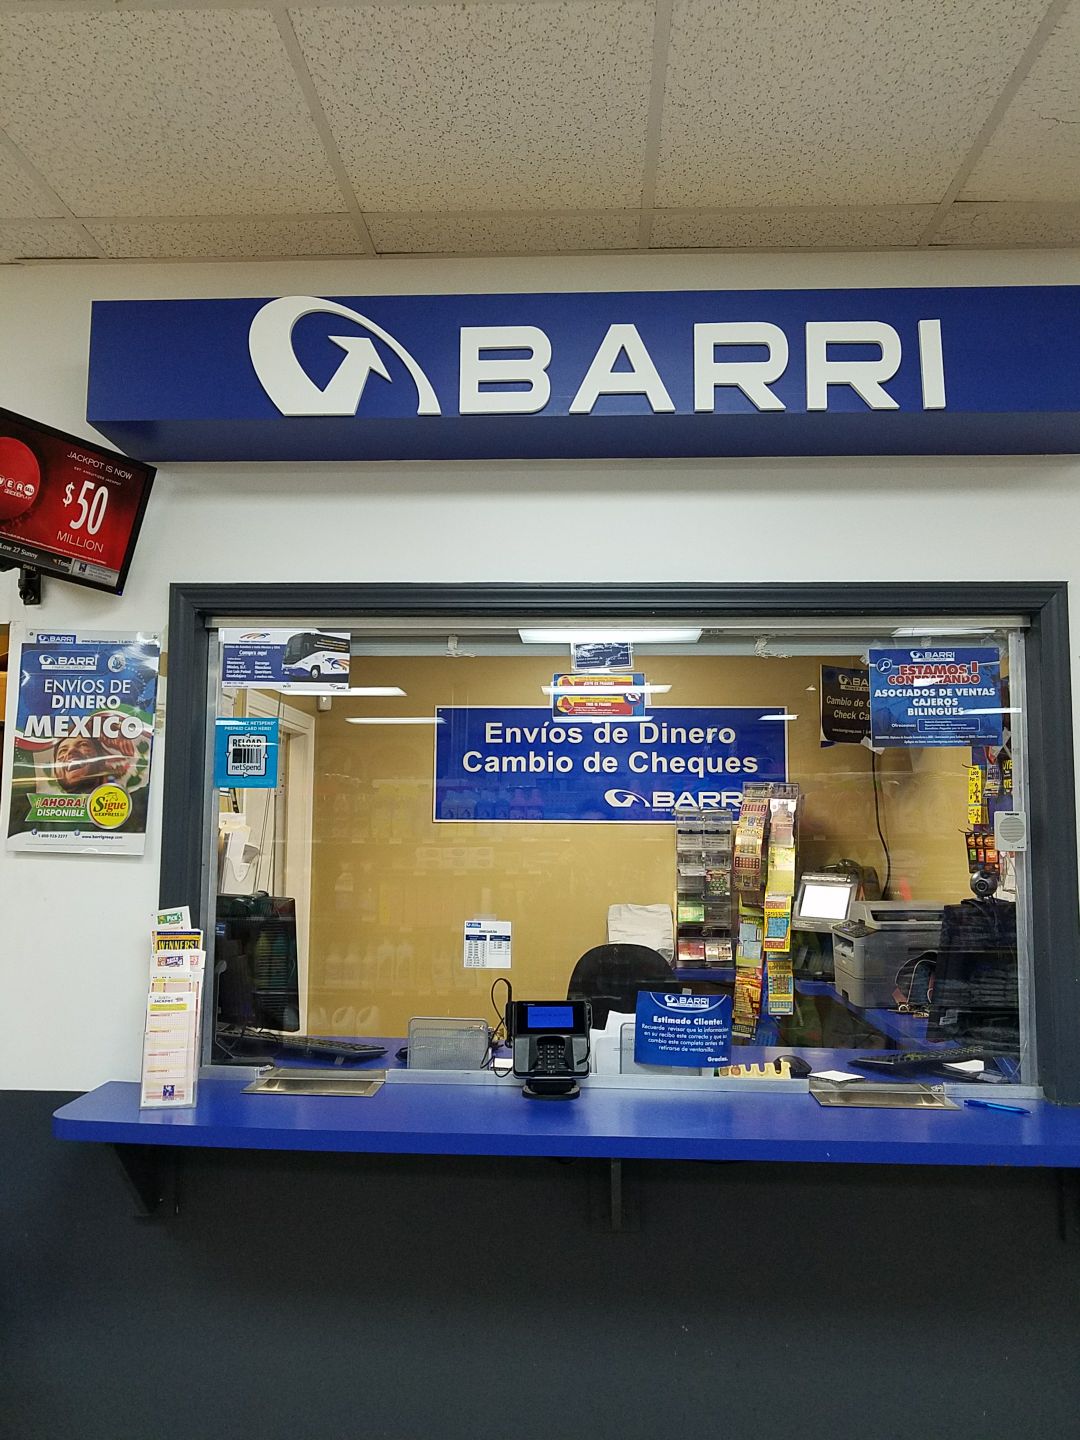 Barri Booth